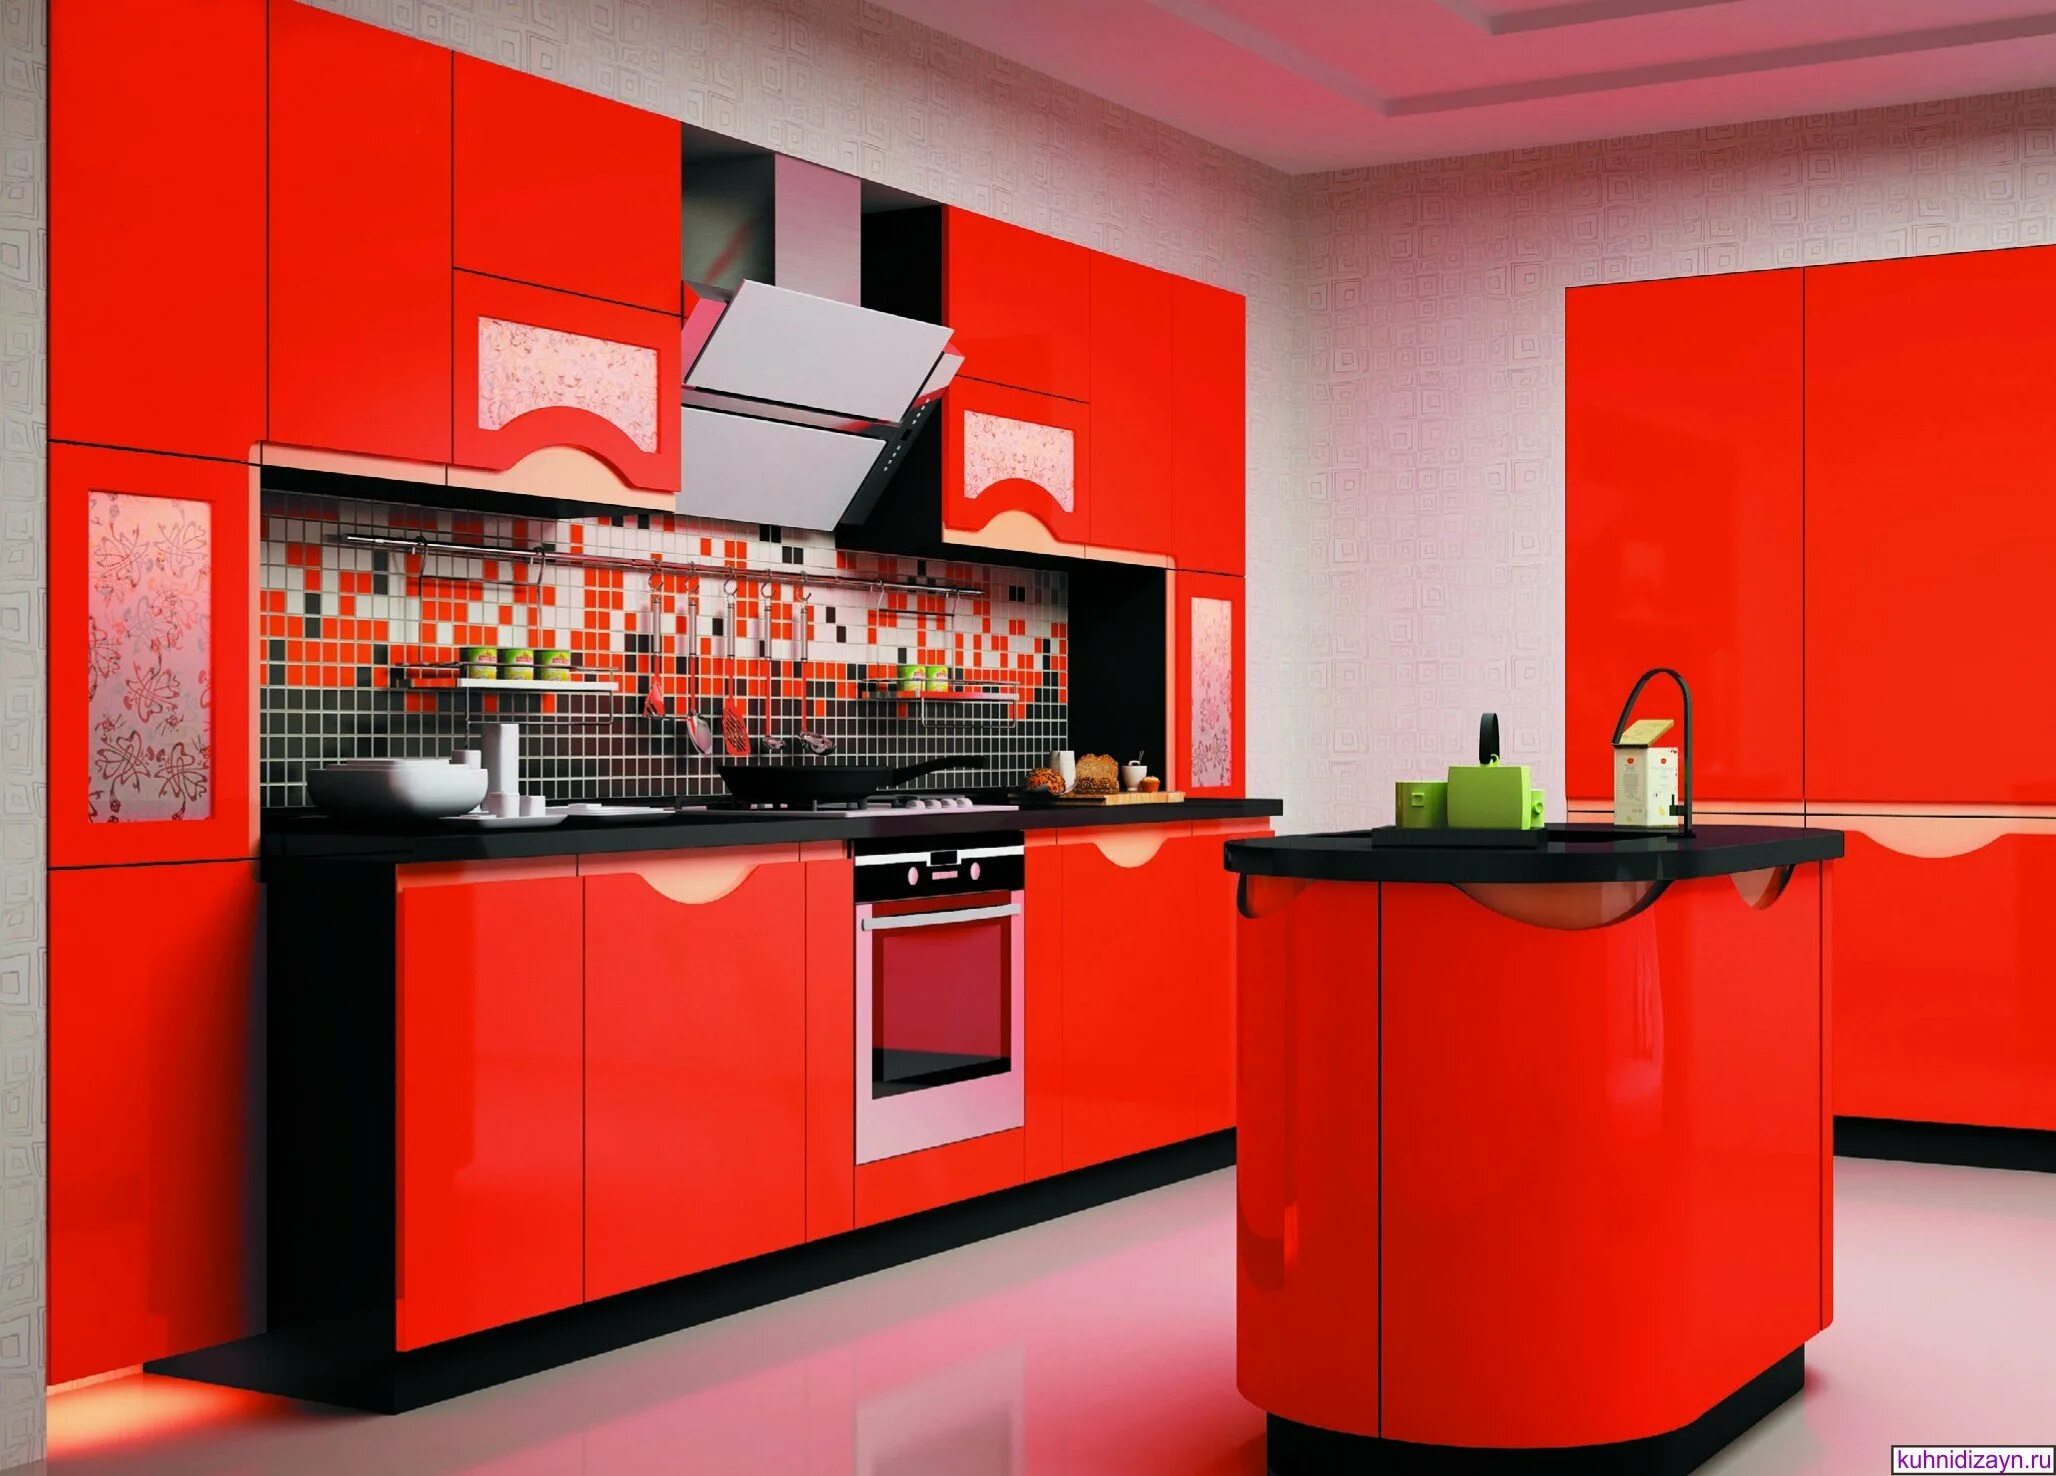 Идеальный красный цвет. Красные кухни. Красивая яркая кухня. Кухня в Красном цвете. Красивый кухонный гарнитур.